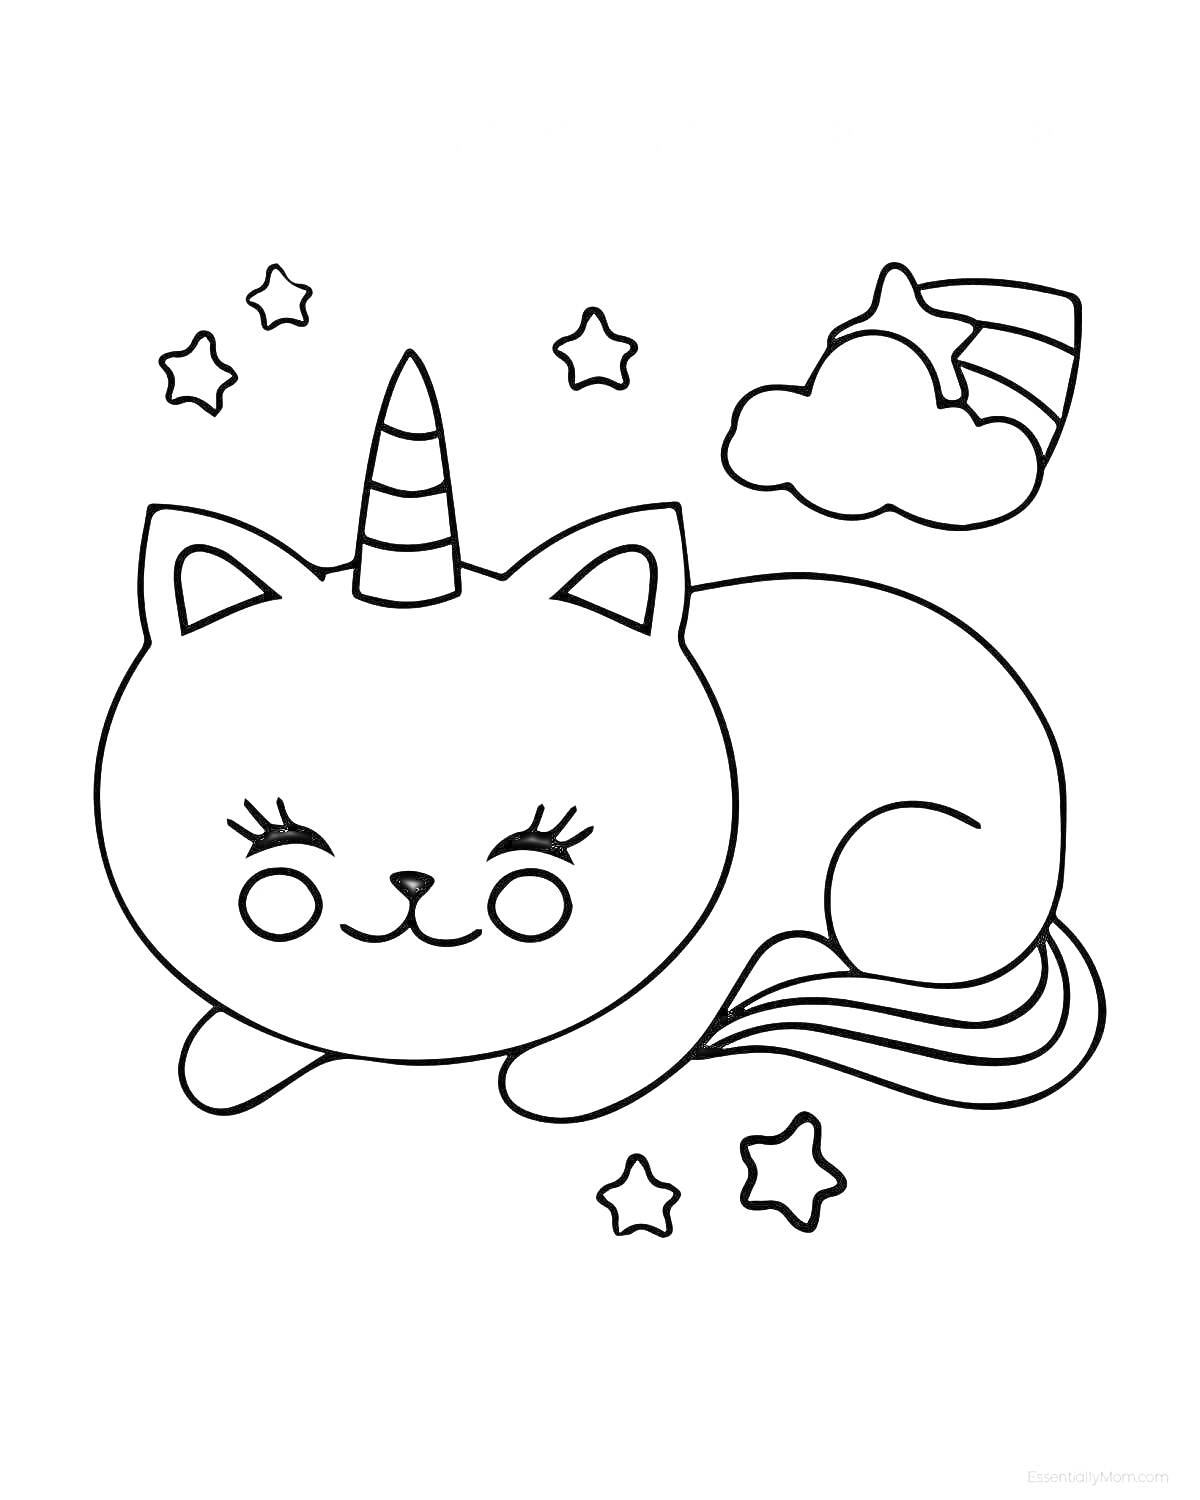 Раскраска Кот-единорог с закрытыми глазами, радужный хвост, облако и звезды